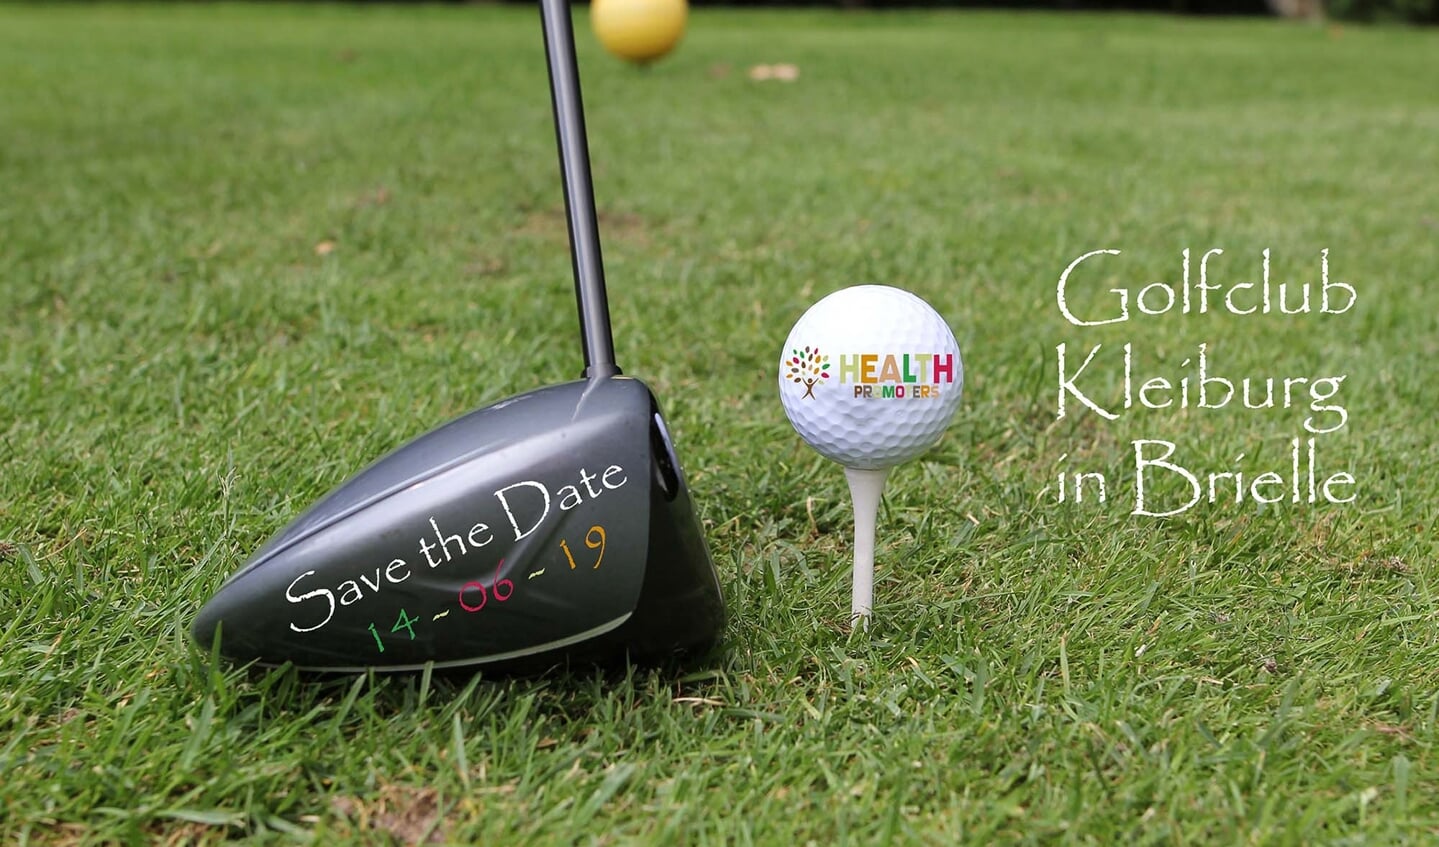 Golfclub Kleiburg is trots dit event voor de derde keer te mogen hosten!